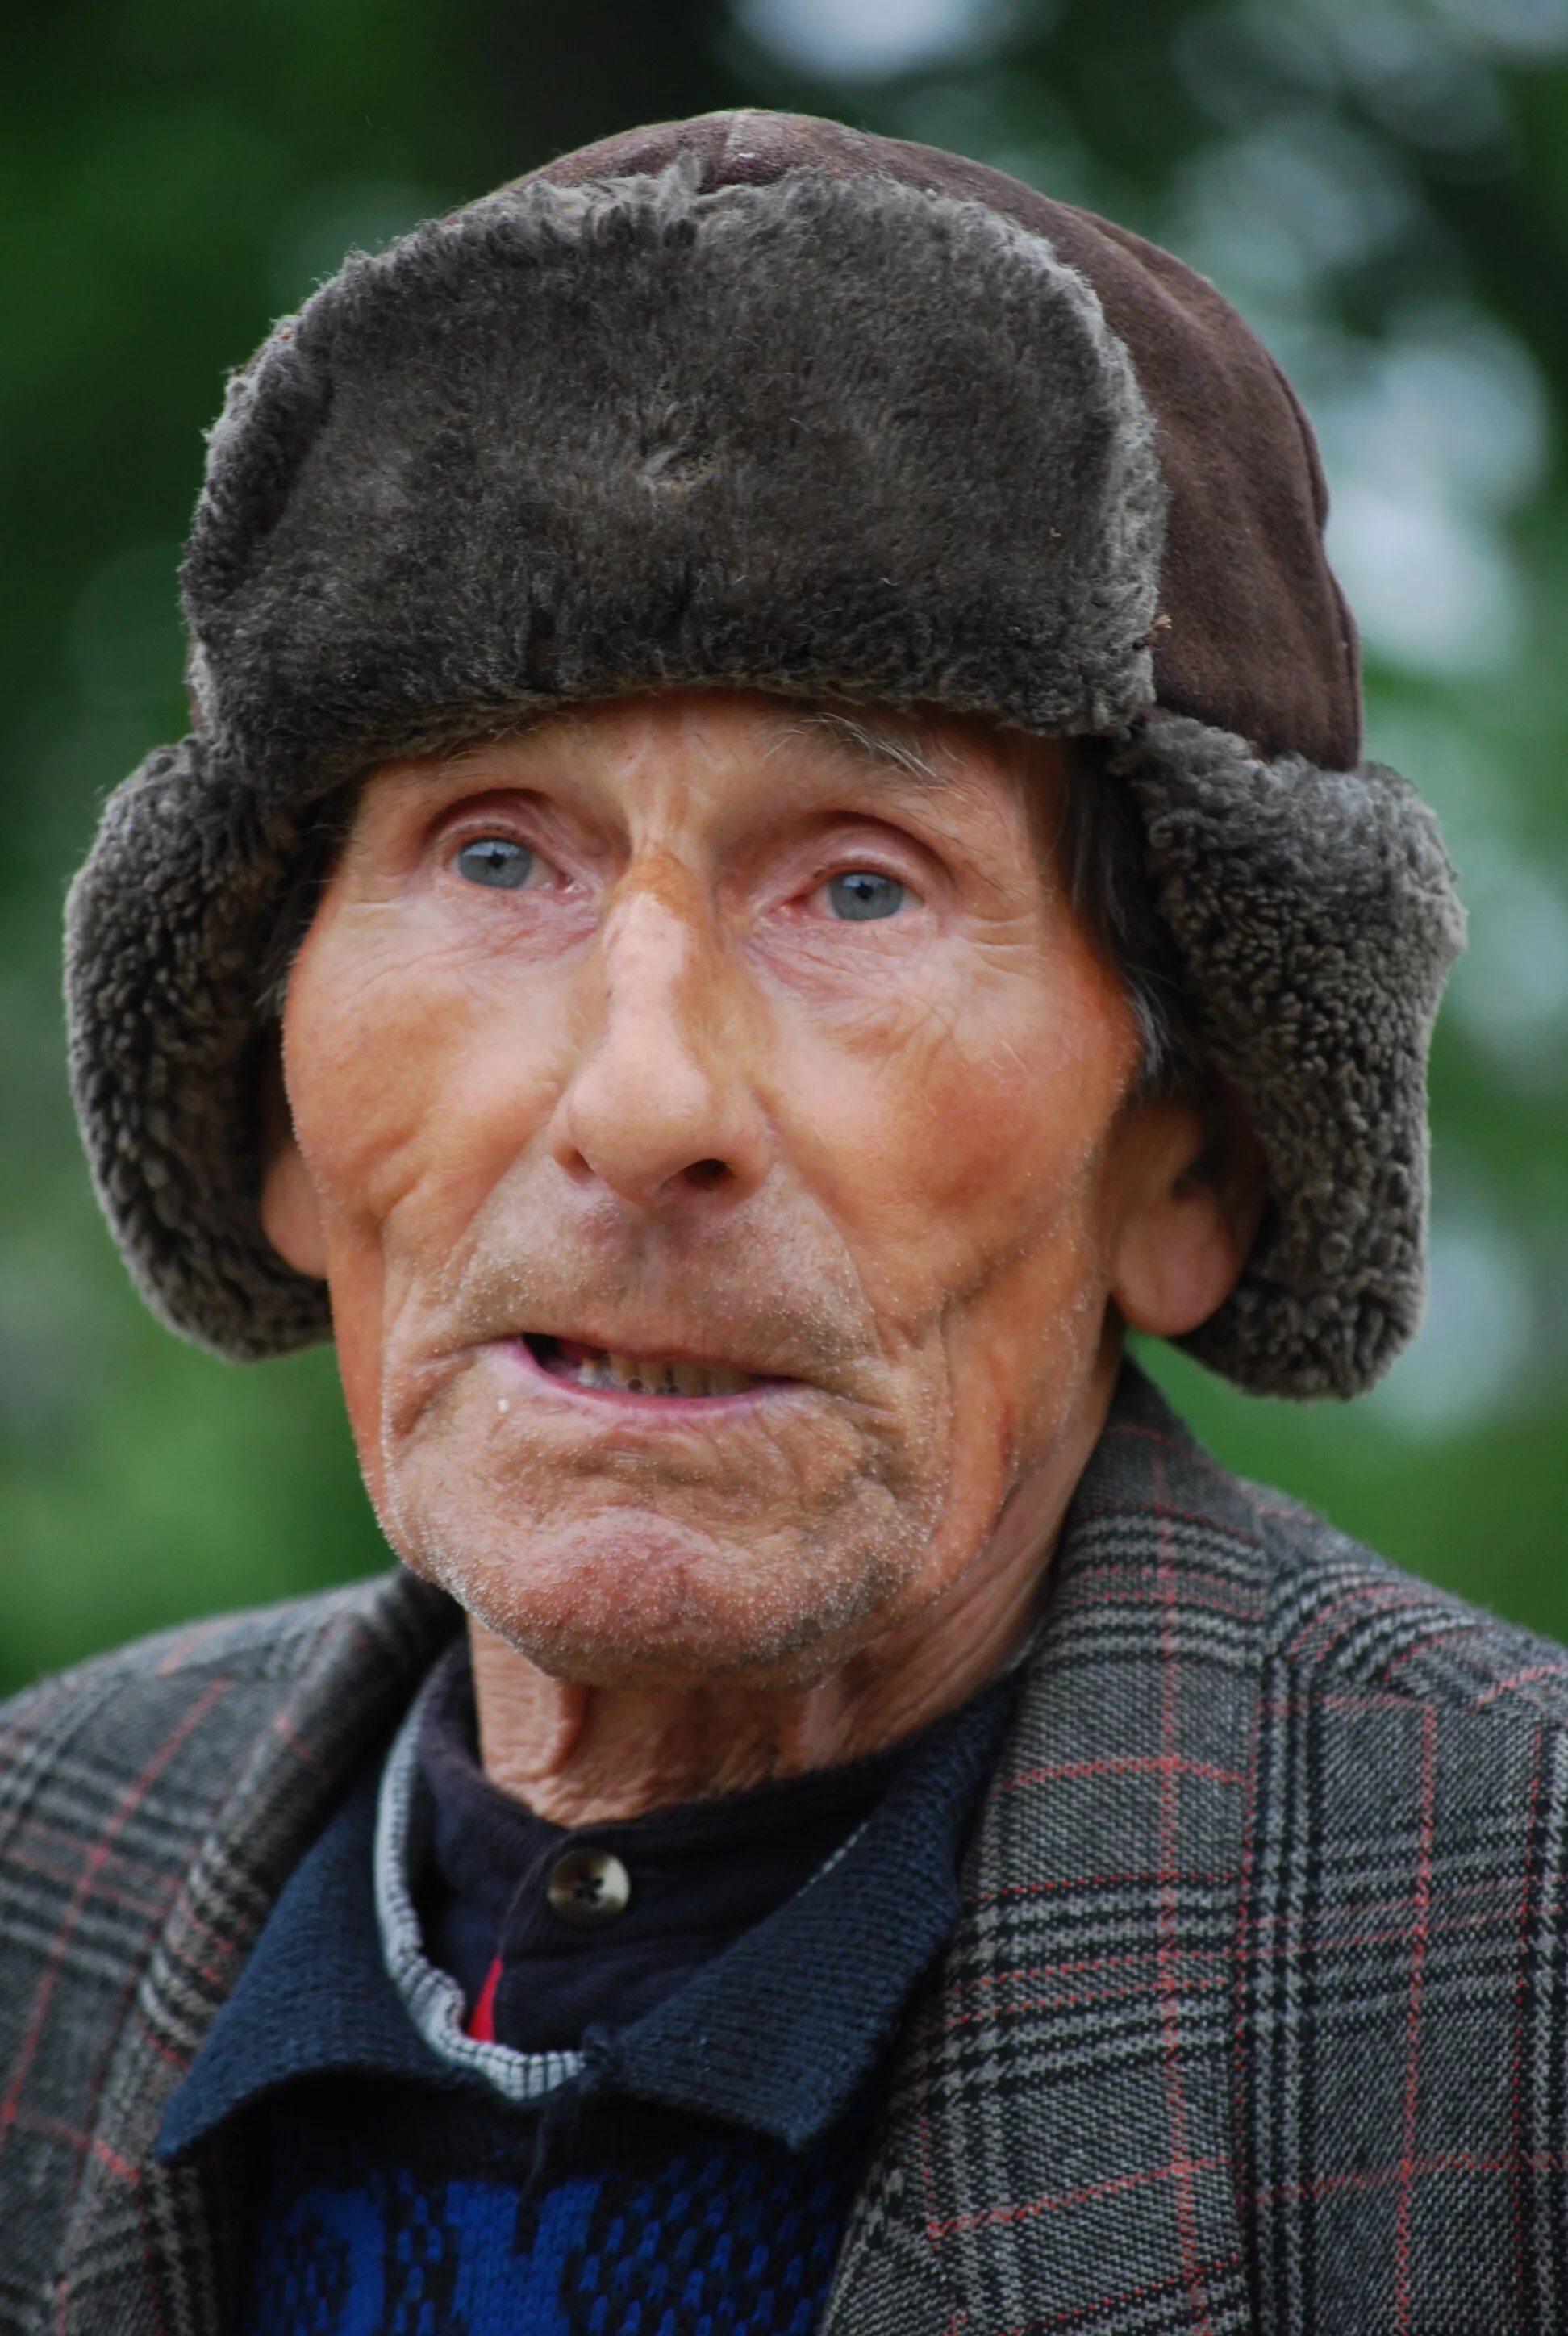 Русские девушки пожилые мужчины. Старик. Старый человек. Фотографии людей. Портрет пожилого мужчины.